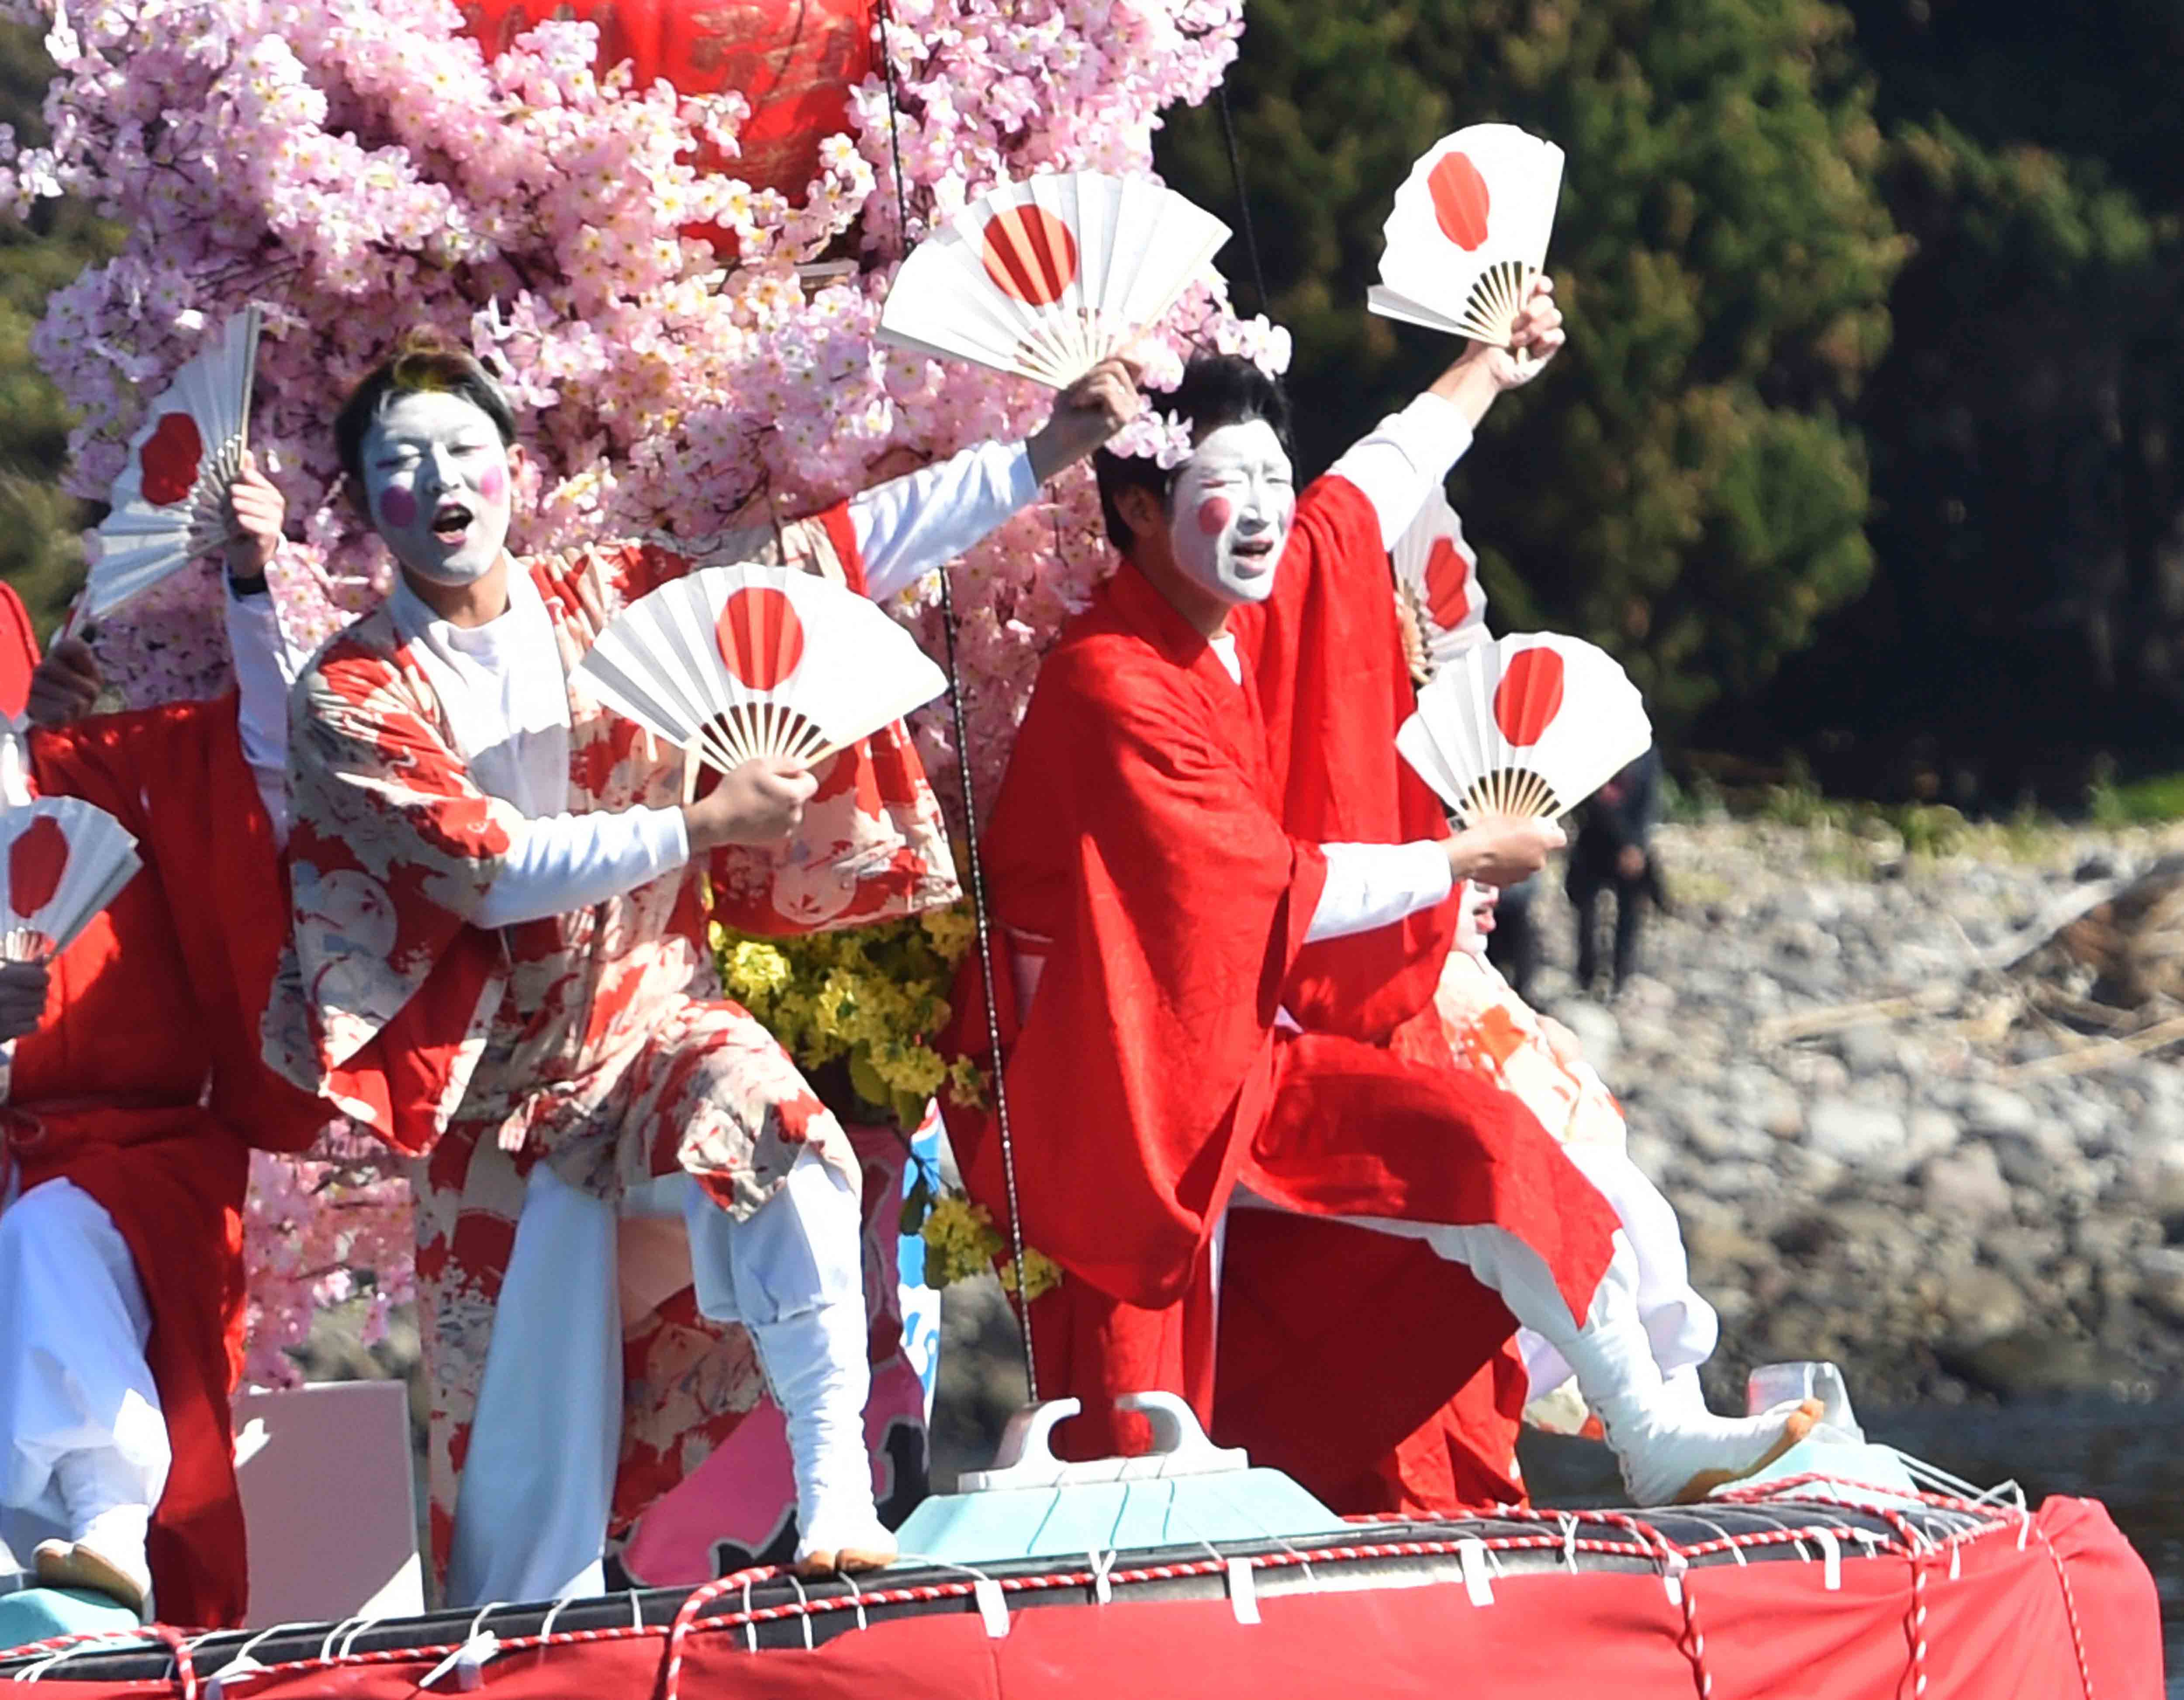 日本静冈县举行“大濑祭” 男子扮女装舞蹈祈祷渔业丰收